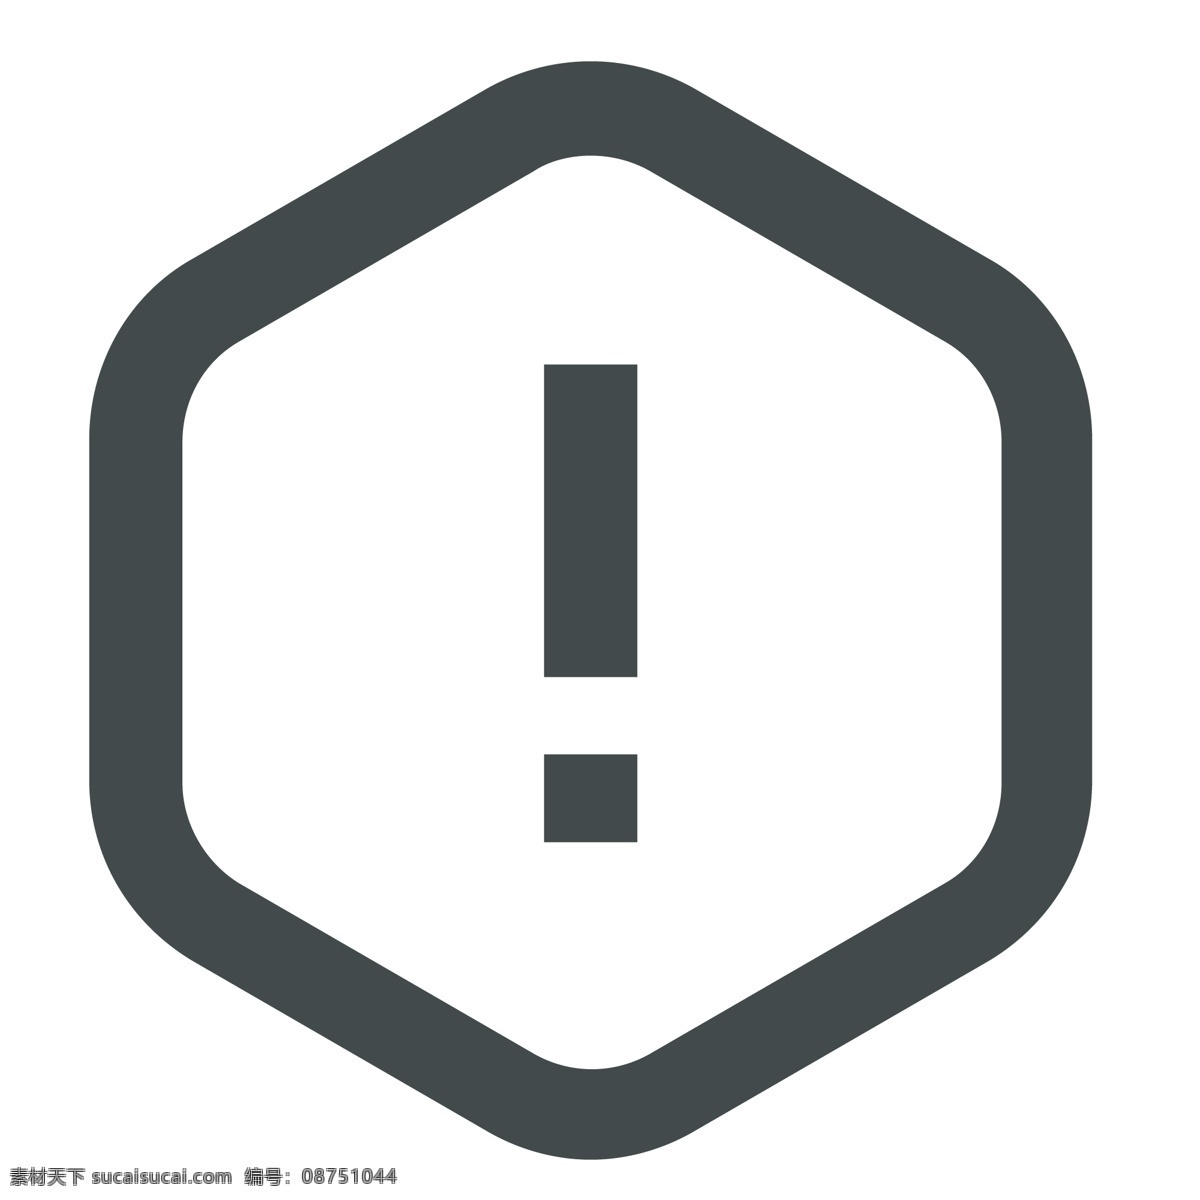 禁止图标设计 符号 禁止 警示图标 手机图标 智能图标 教育图标 学习图标 网页图标